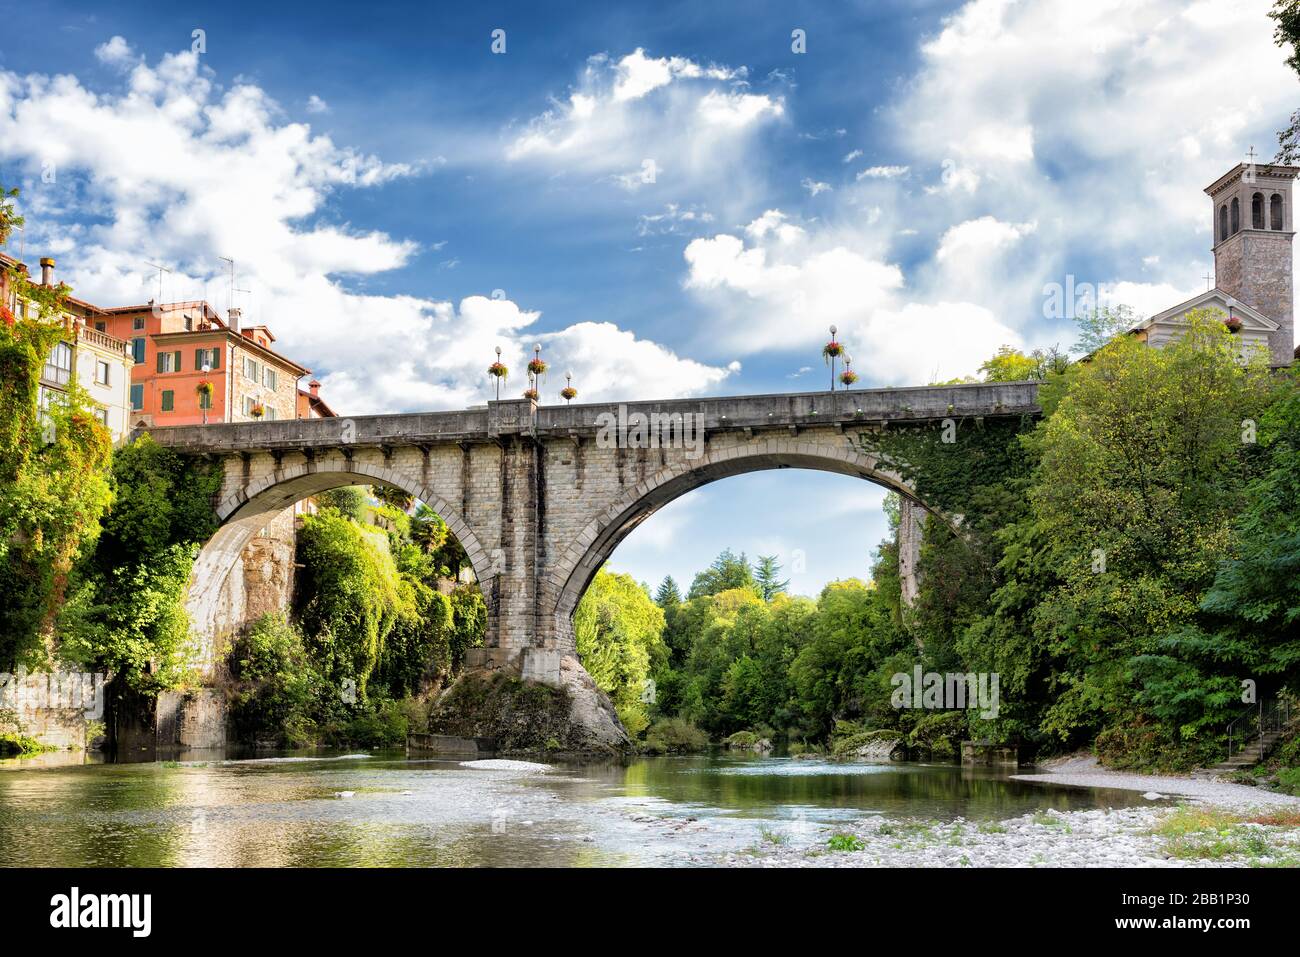 Cividale del Friuli und seine Teufelsbrücke, die den Fluss Natisone überquert. Provinz Udine, Friaul-Julisch Venetien, Italien Stockfoto